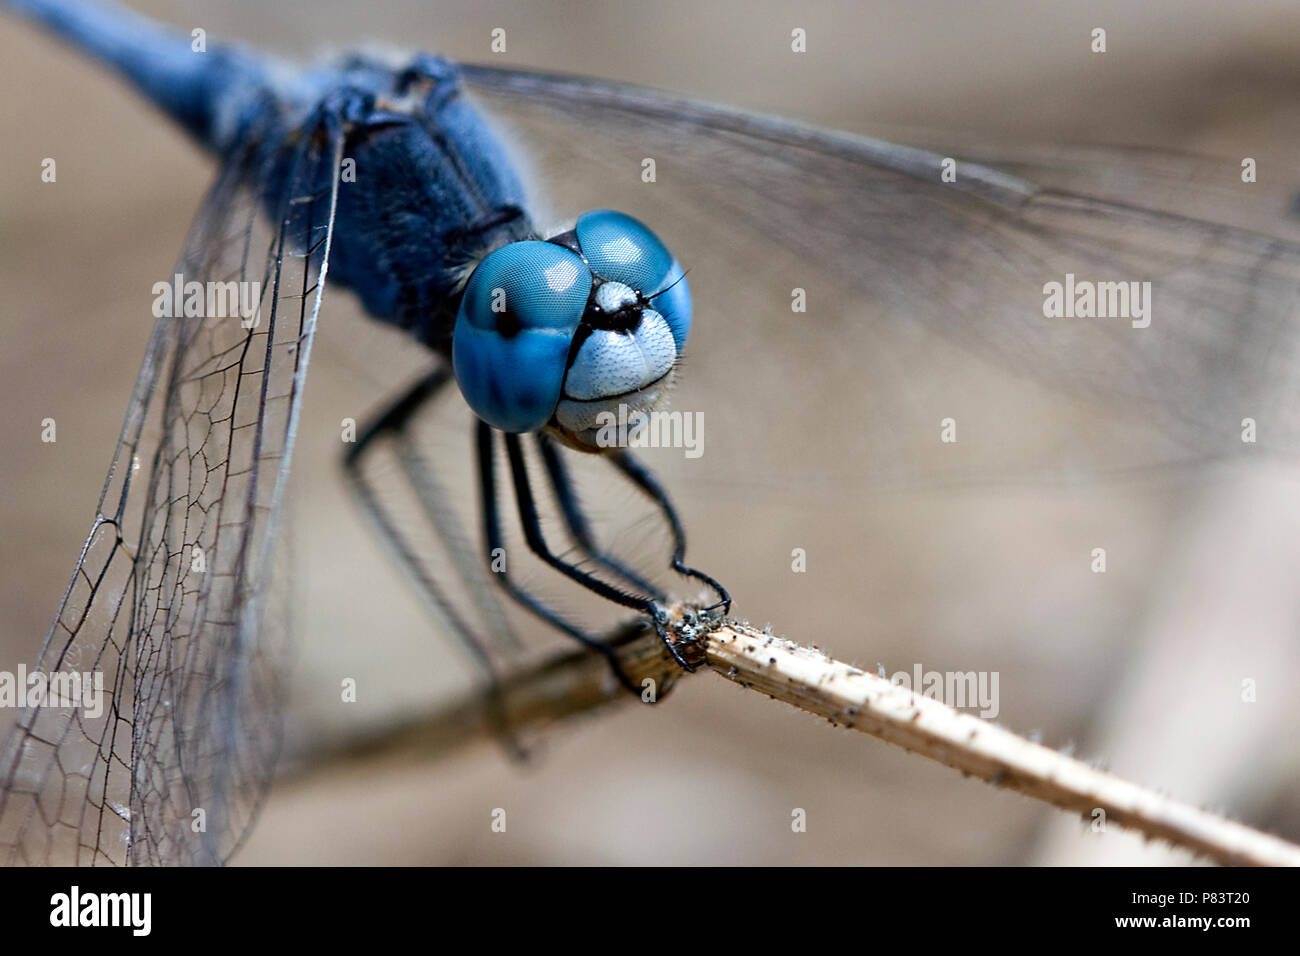 Libre d'une libellule bleue assis sur un brin d'herbe sèche, se concentrer sur le visage et les yeux et d'une aile Banque D'Images